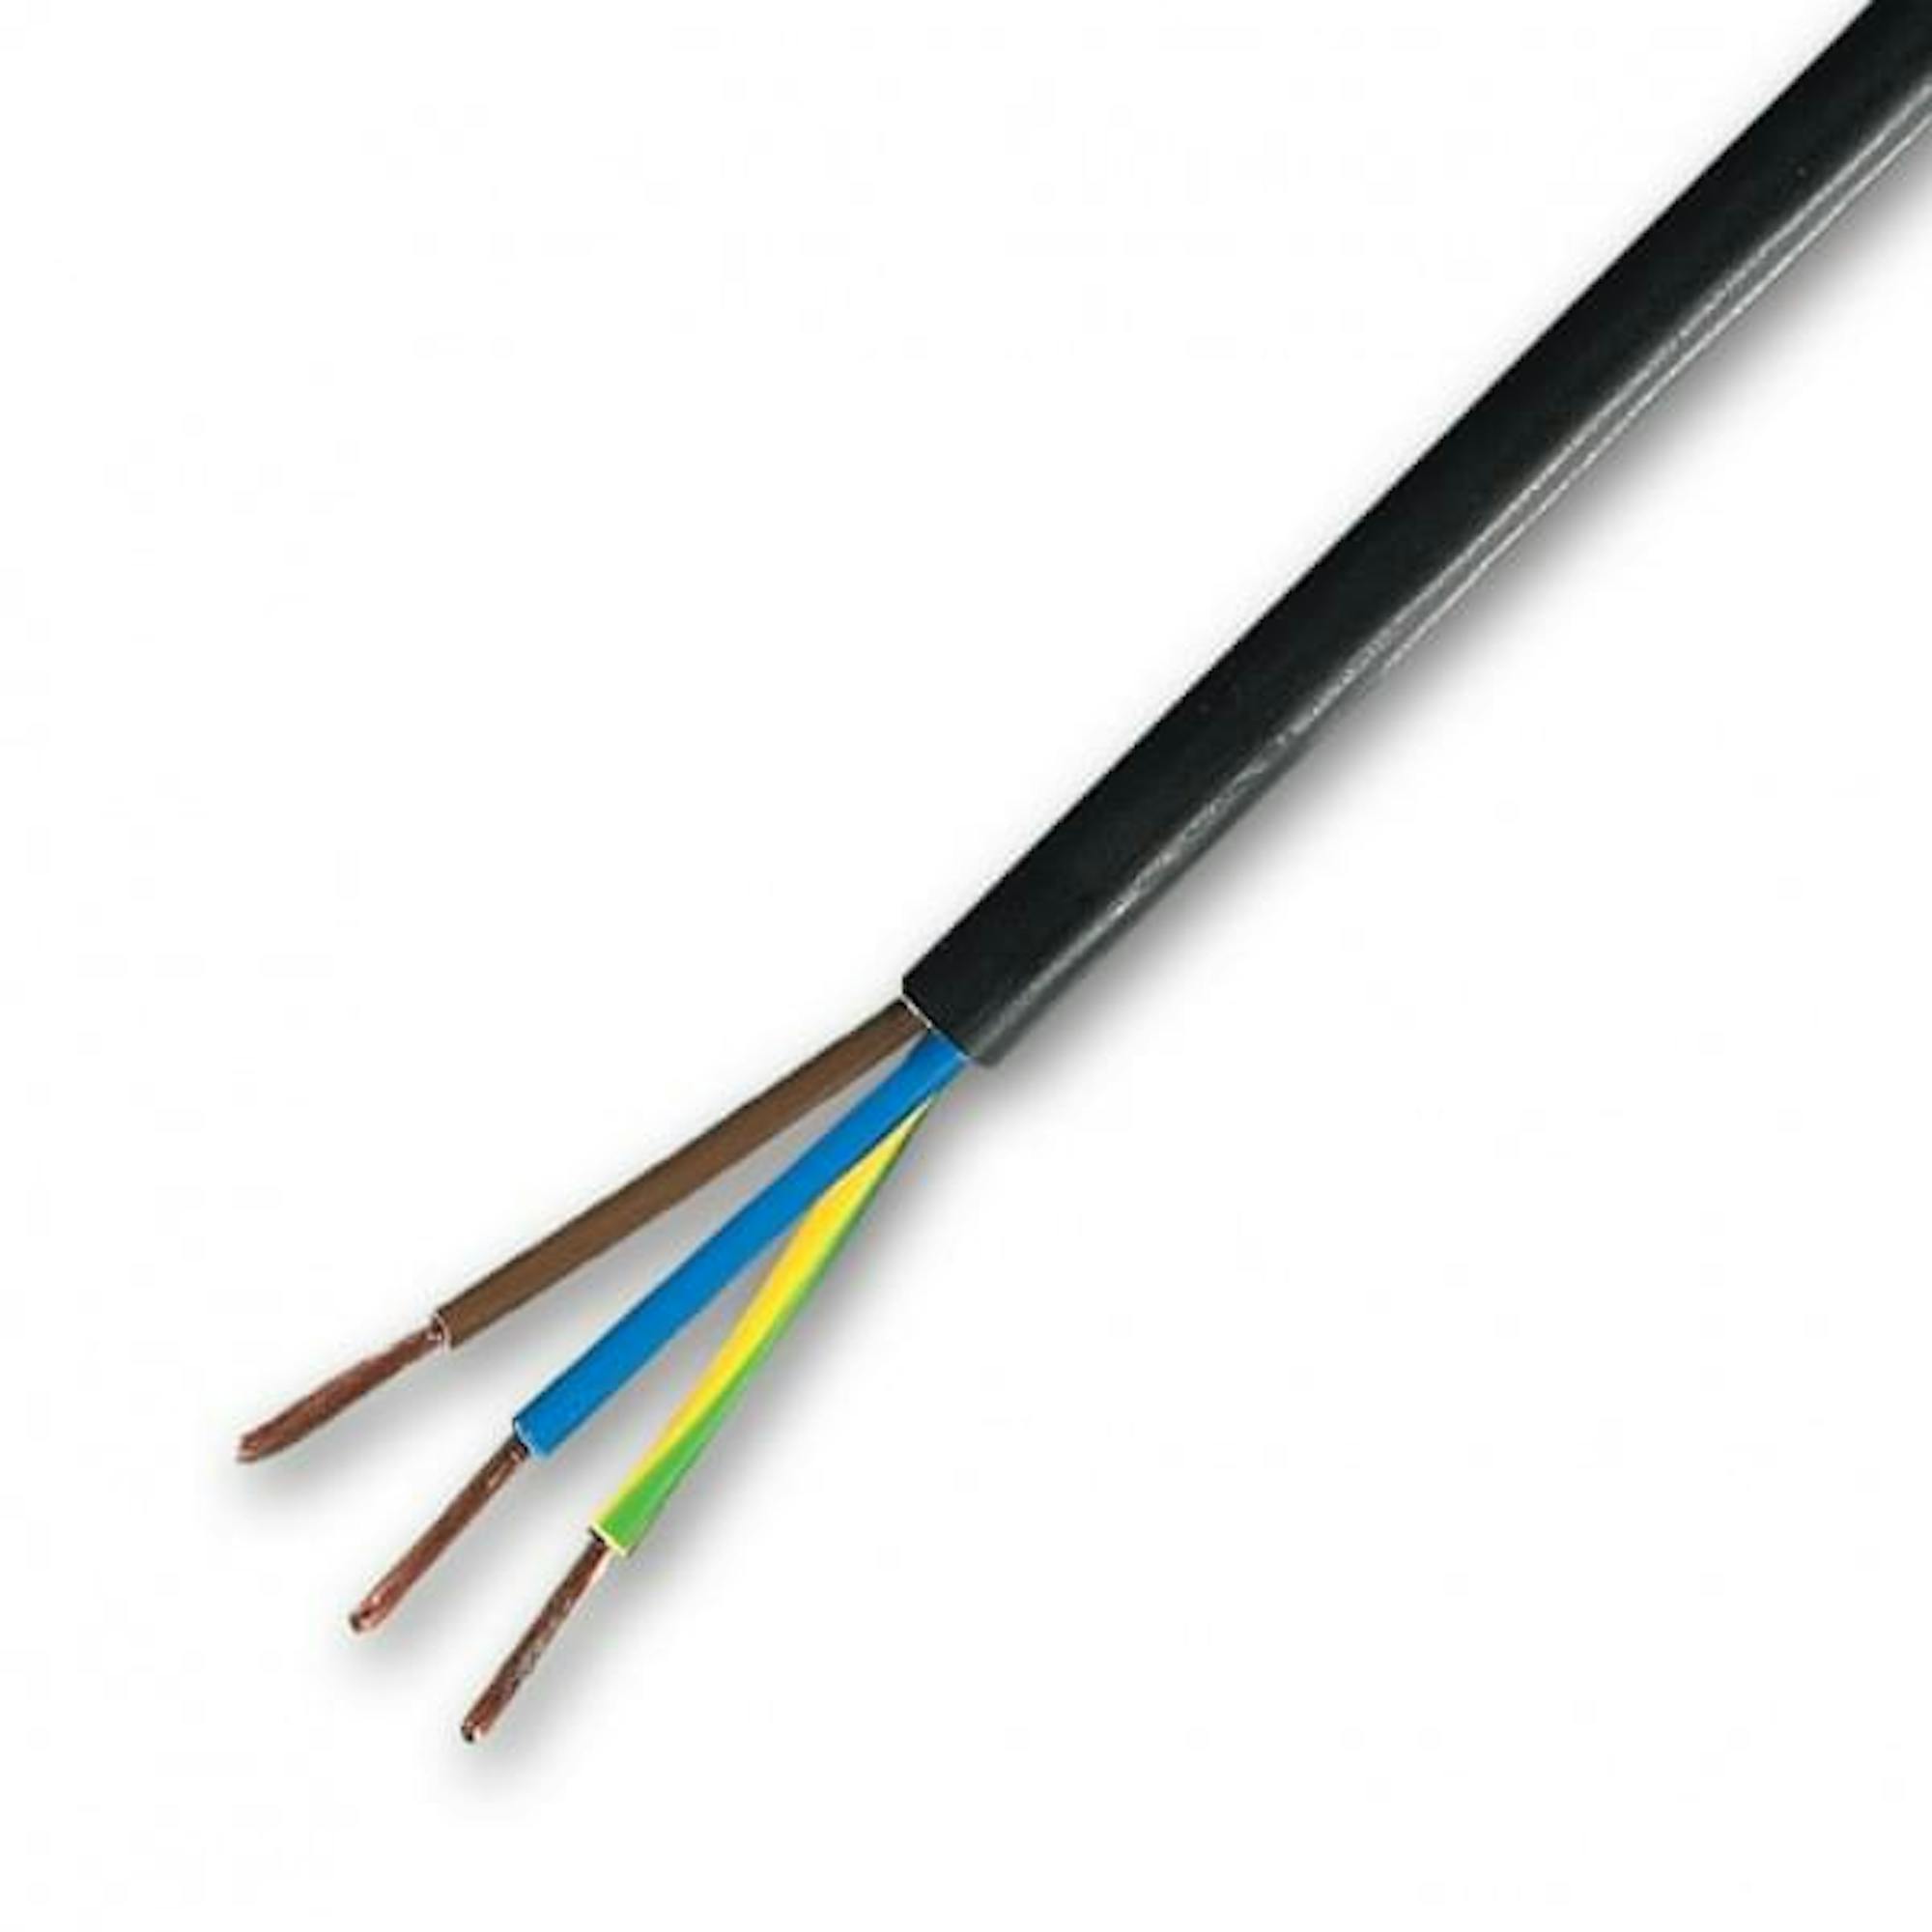 3 x 1.5mm mains cable 15A LSZH, black, 100m reel